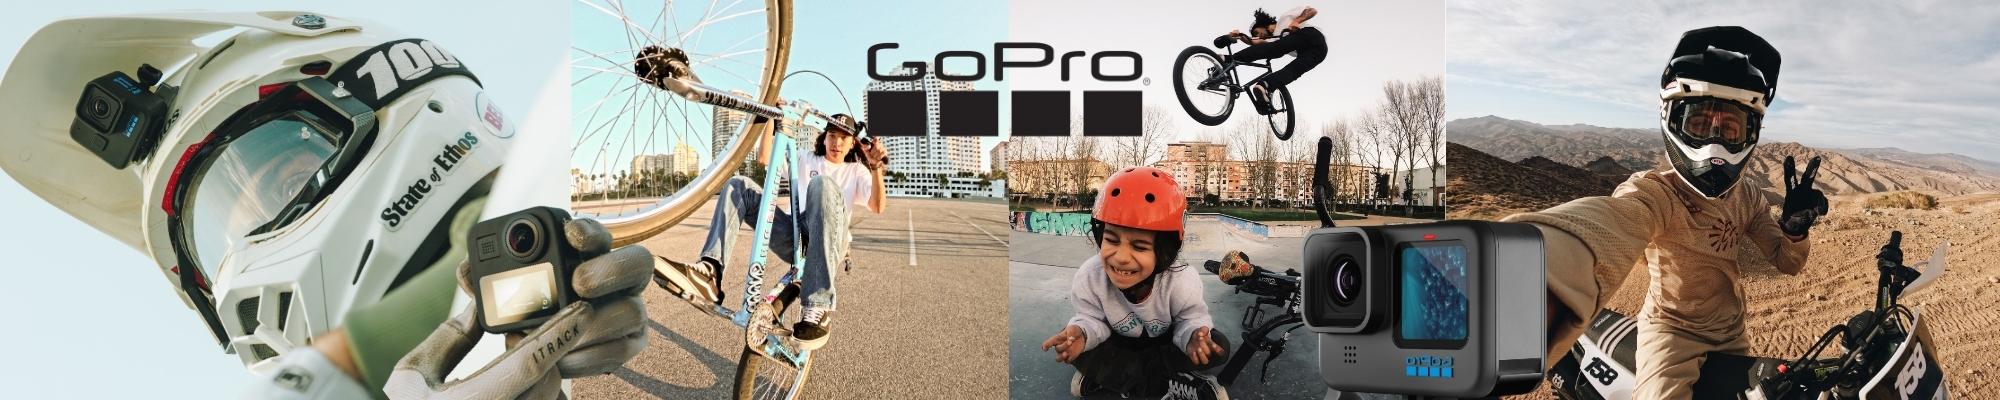 GoPro Bike Shopping Guide